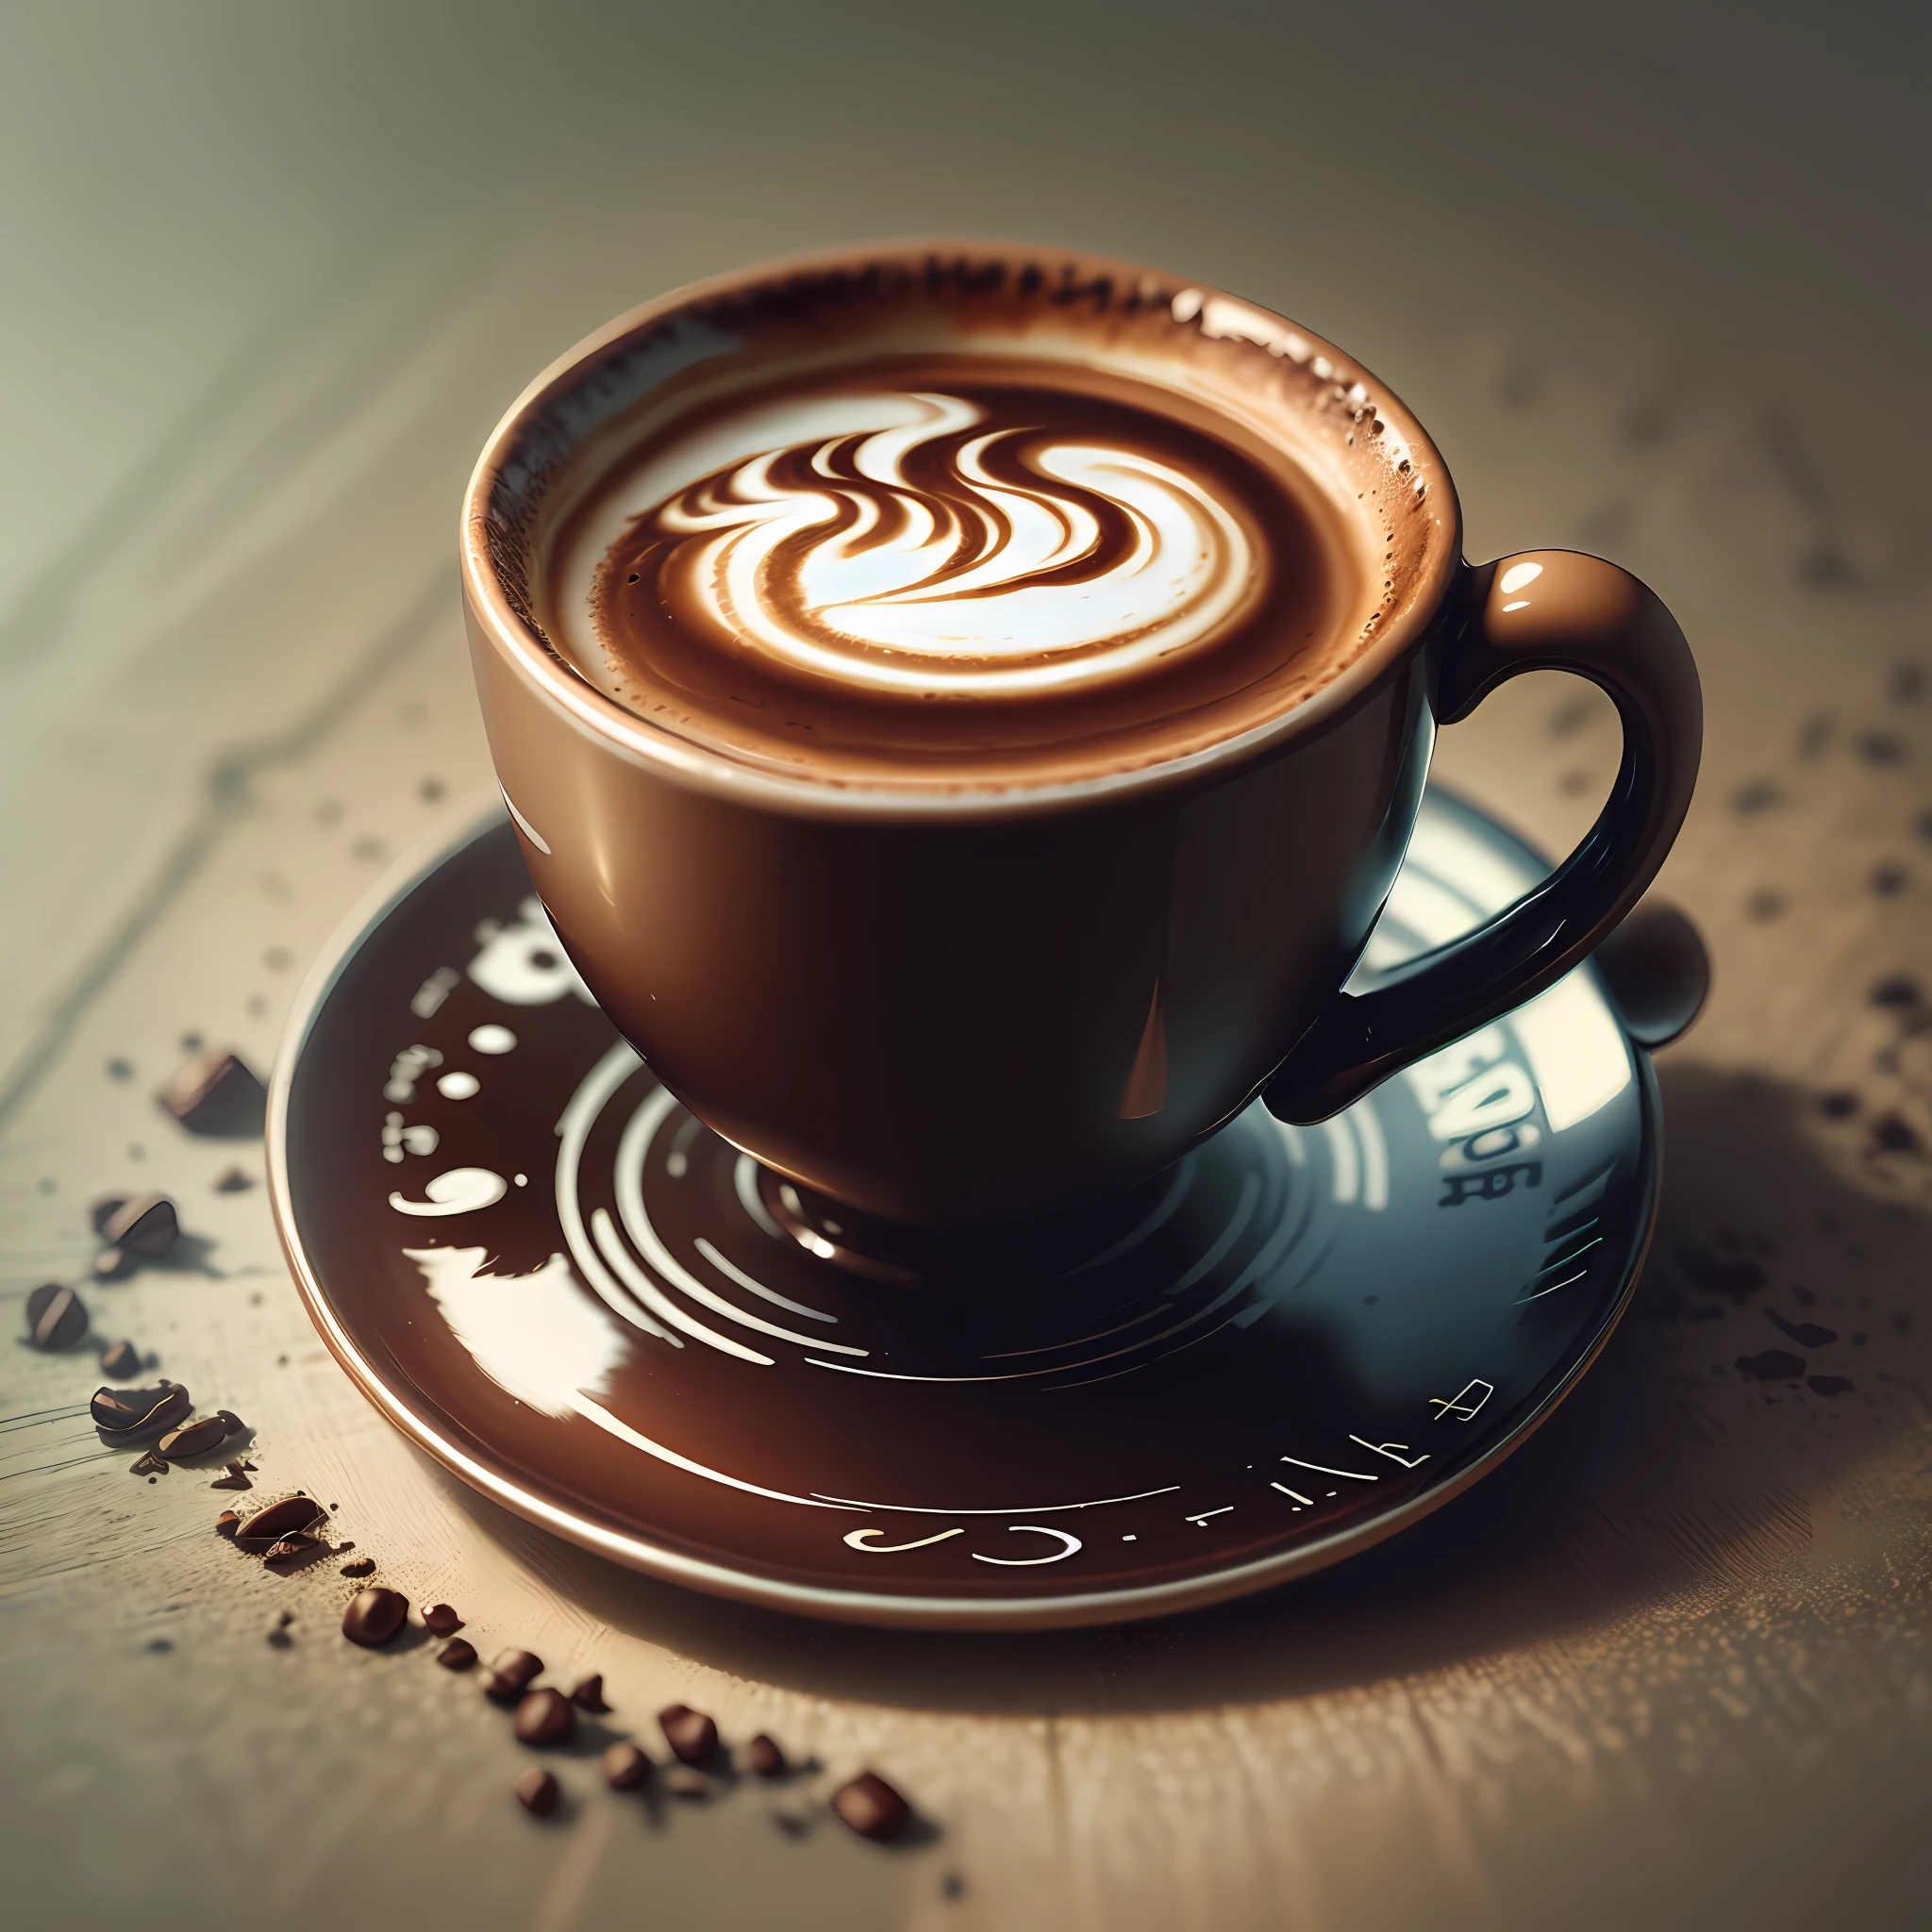 Erstellen Sie ein professionell geschriebenes Logo („Kaffee-Akkord“) in Form einer Tasse mit Henkel